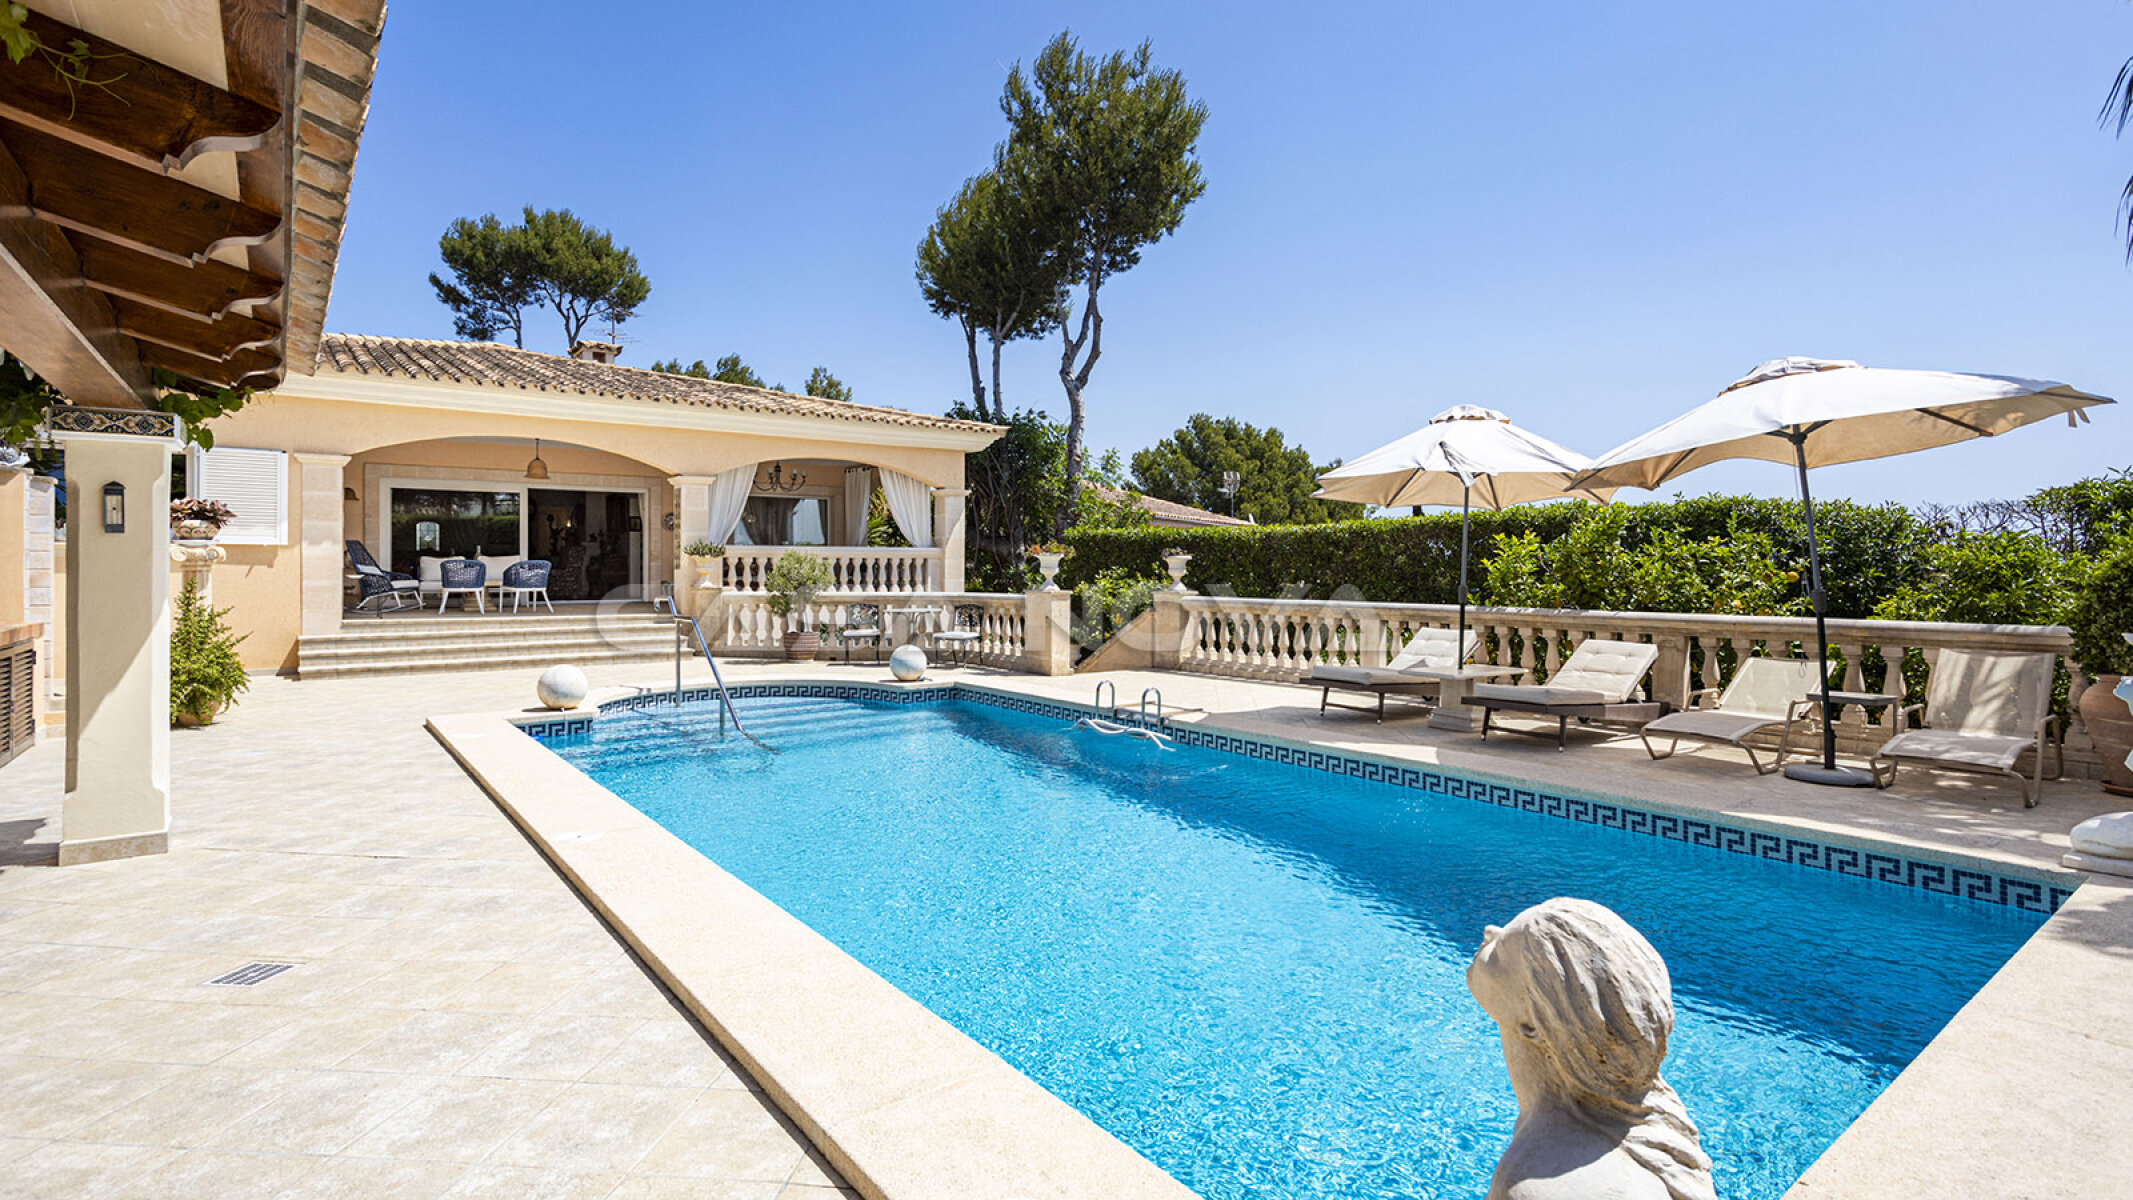 Wundersch�ne Villa Mallorca mit Pool in begehrter Wohnlage